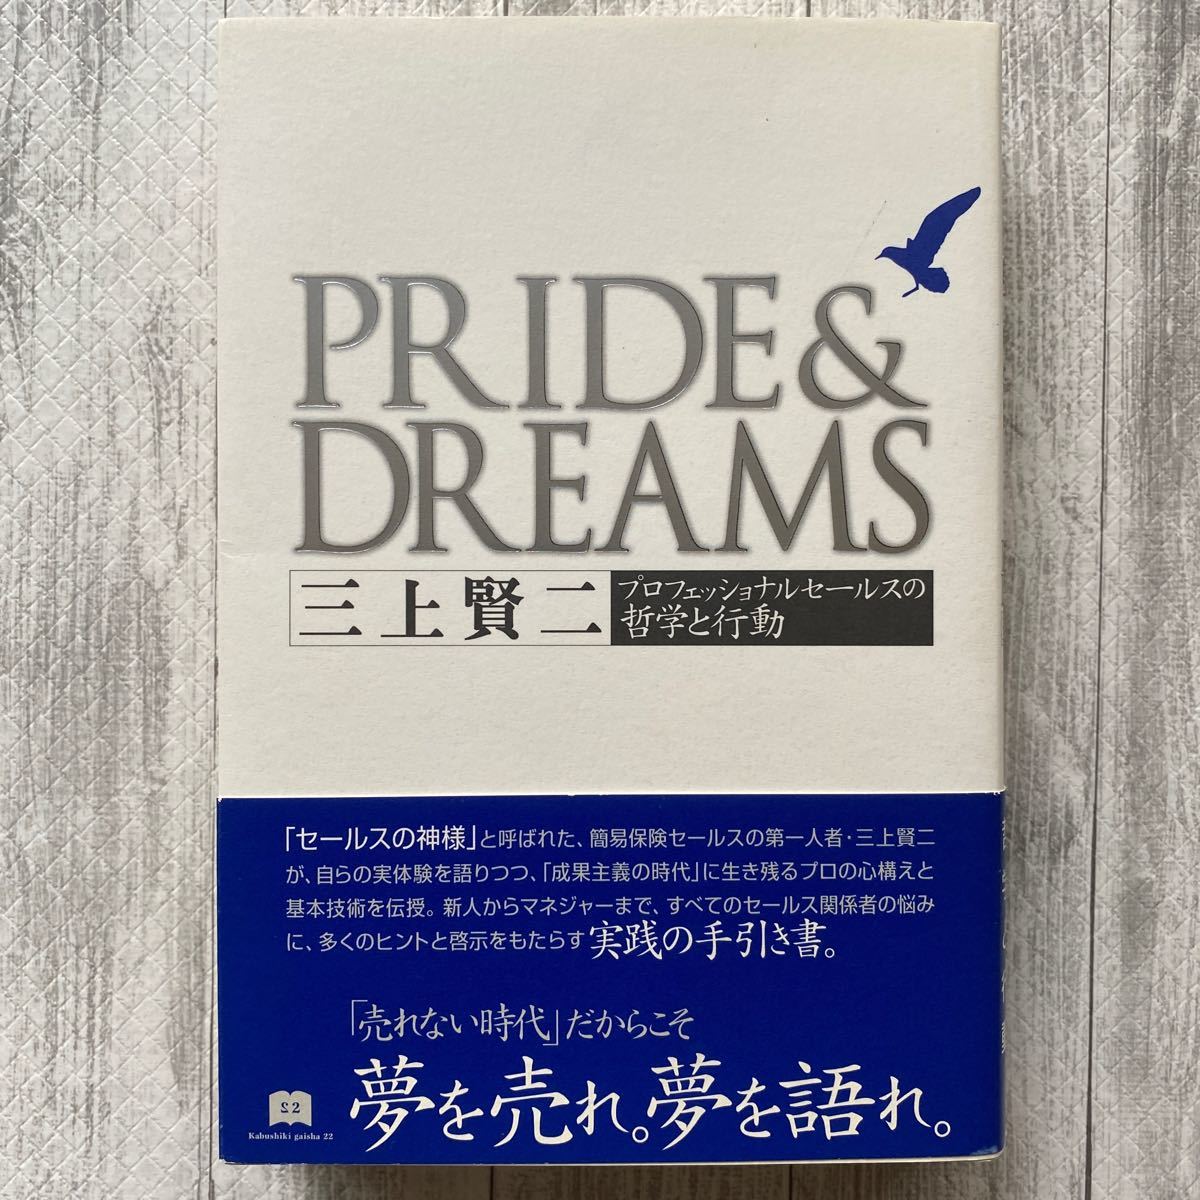 Pride & dreams プロフェッショナルセールスの哲学と行動